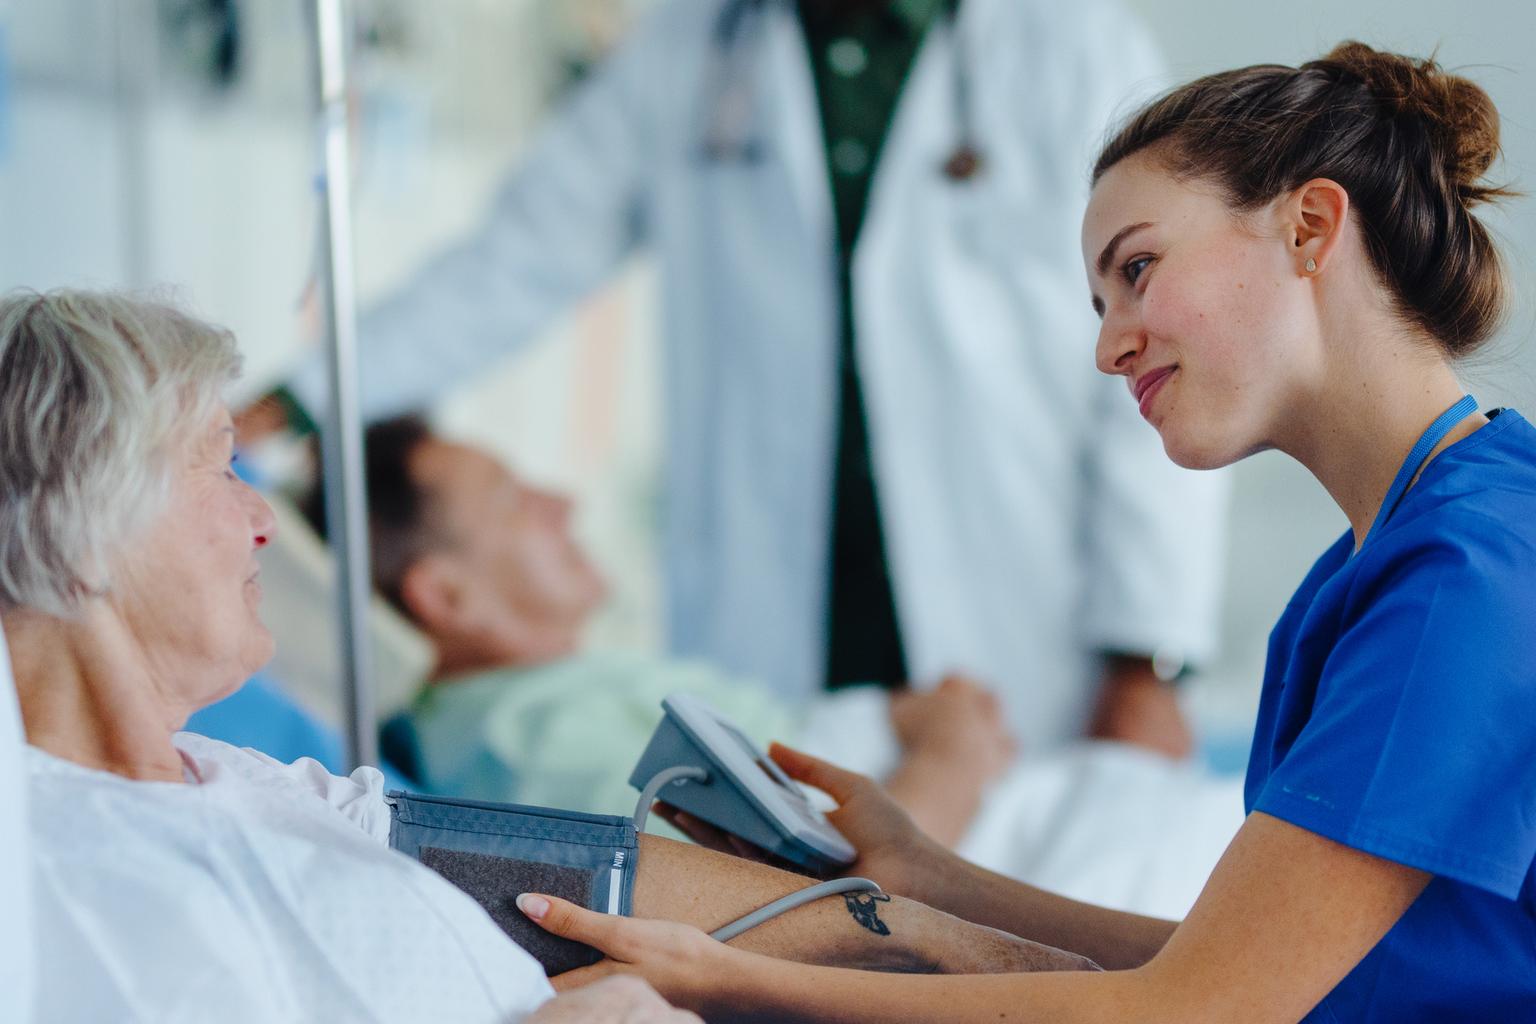 Nurse taking patient's blood pressure at bedside